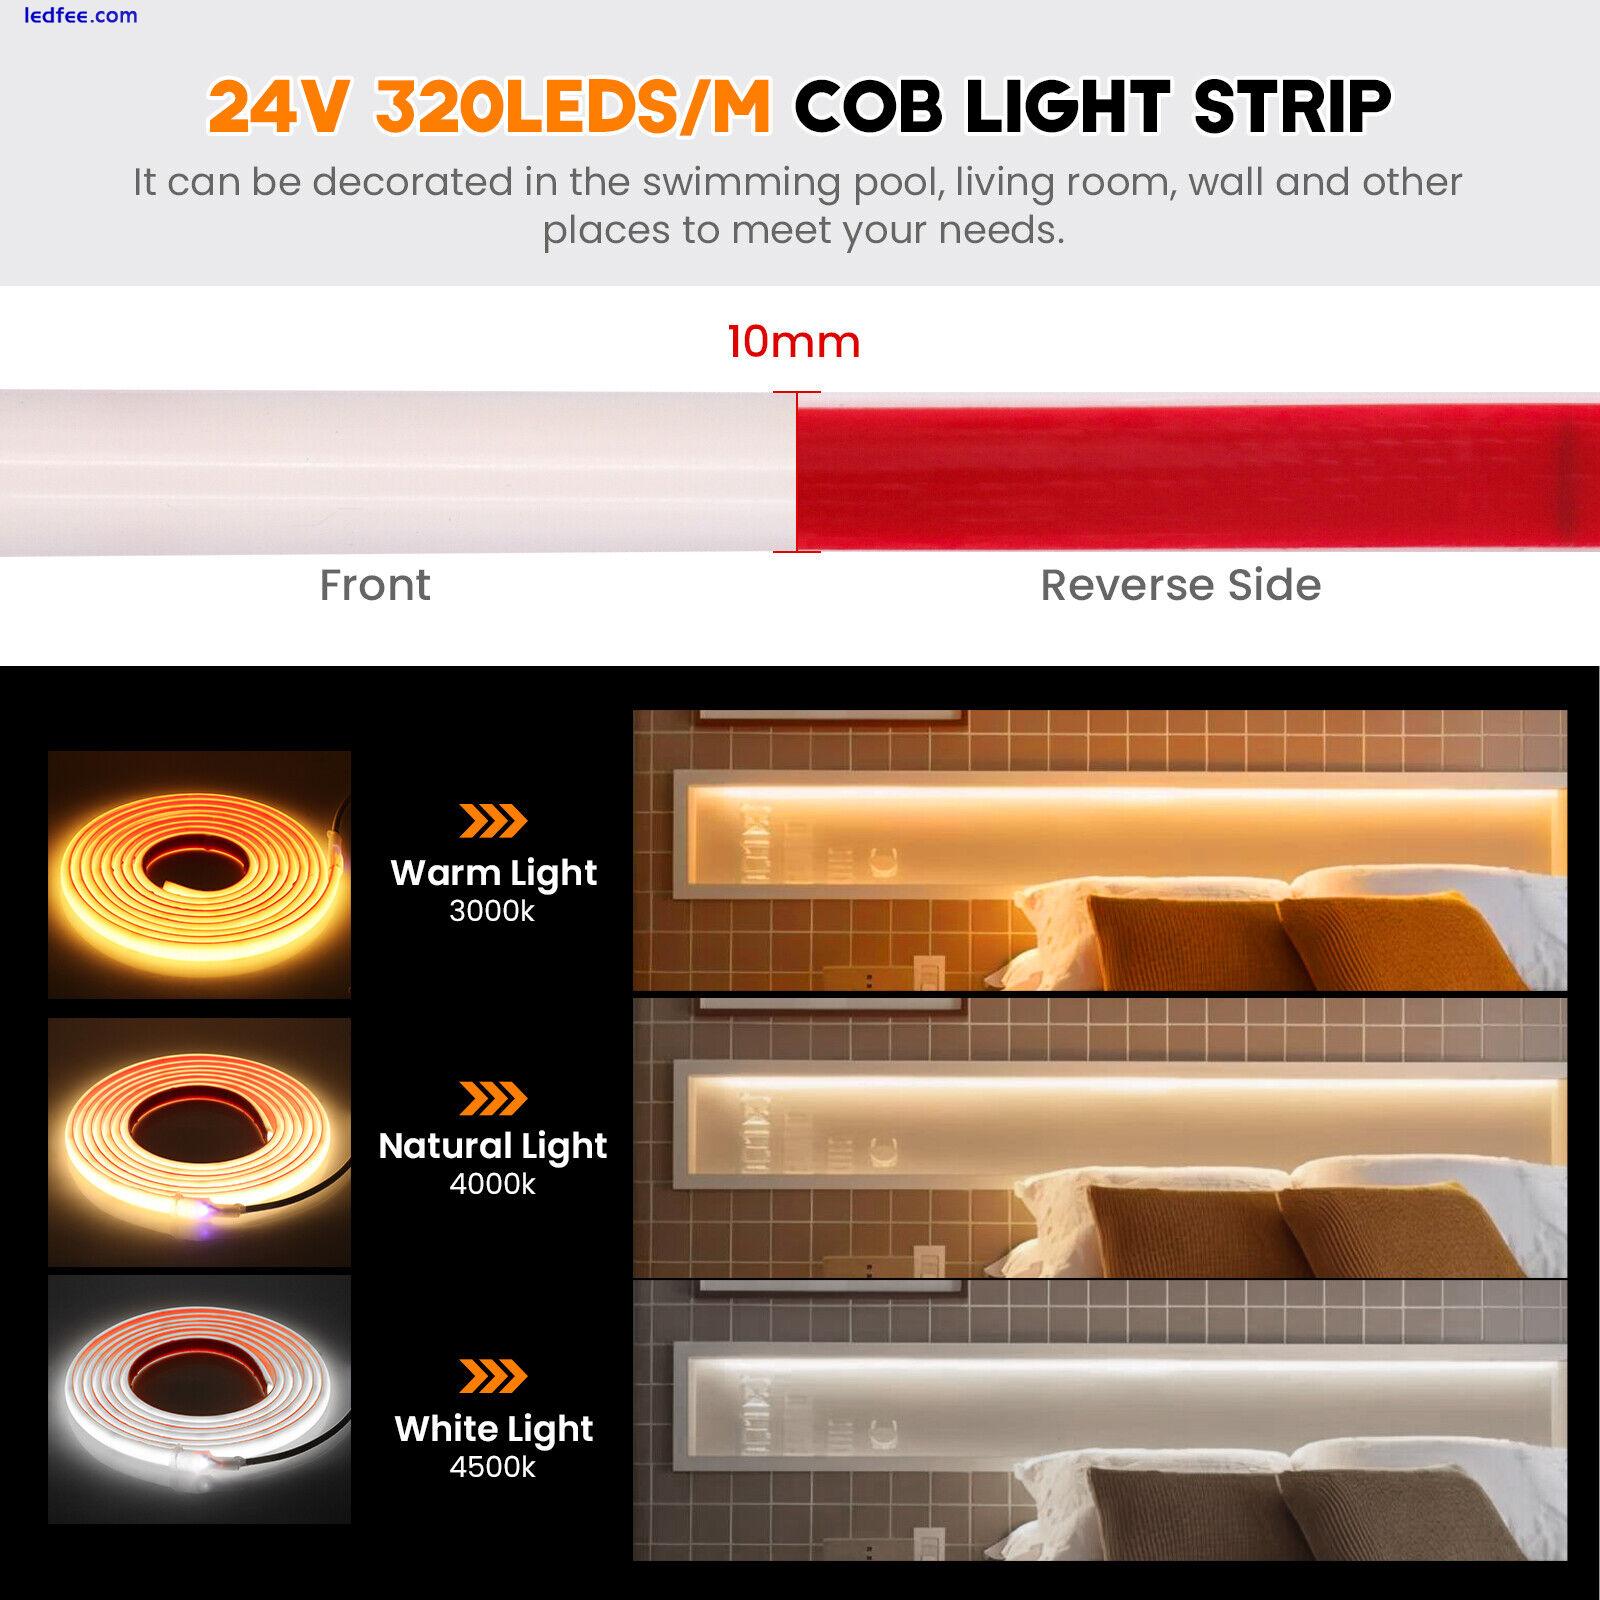 COB LED Strip 12V 24V 320LEDs/m High Density Tape Rope Lights IP68 Waterproof UK 3 